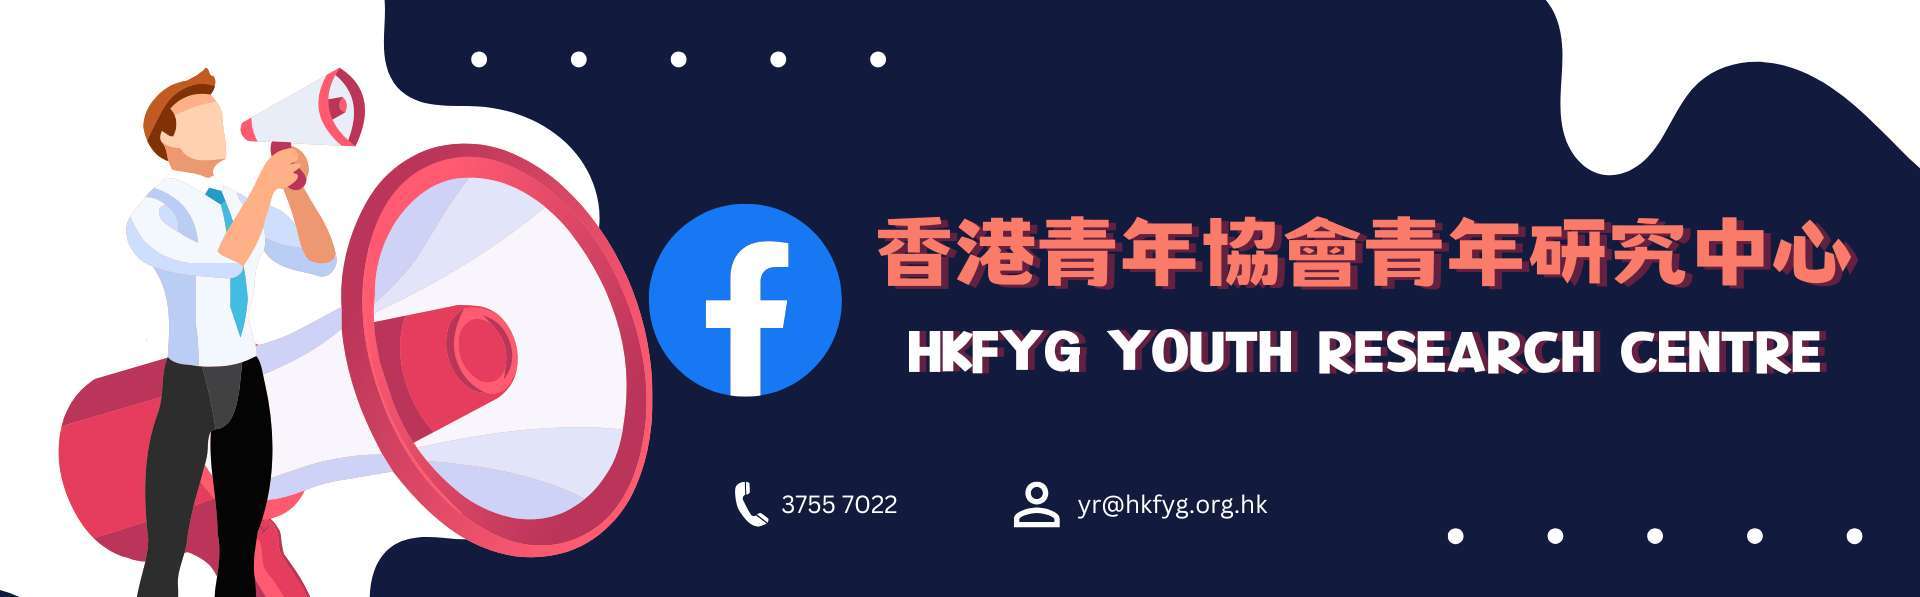 青年創研庫 青年研究中心臉書專頁 HKFYG YRC's Facebook Page